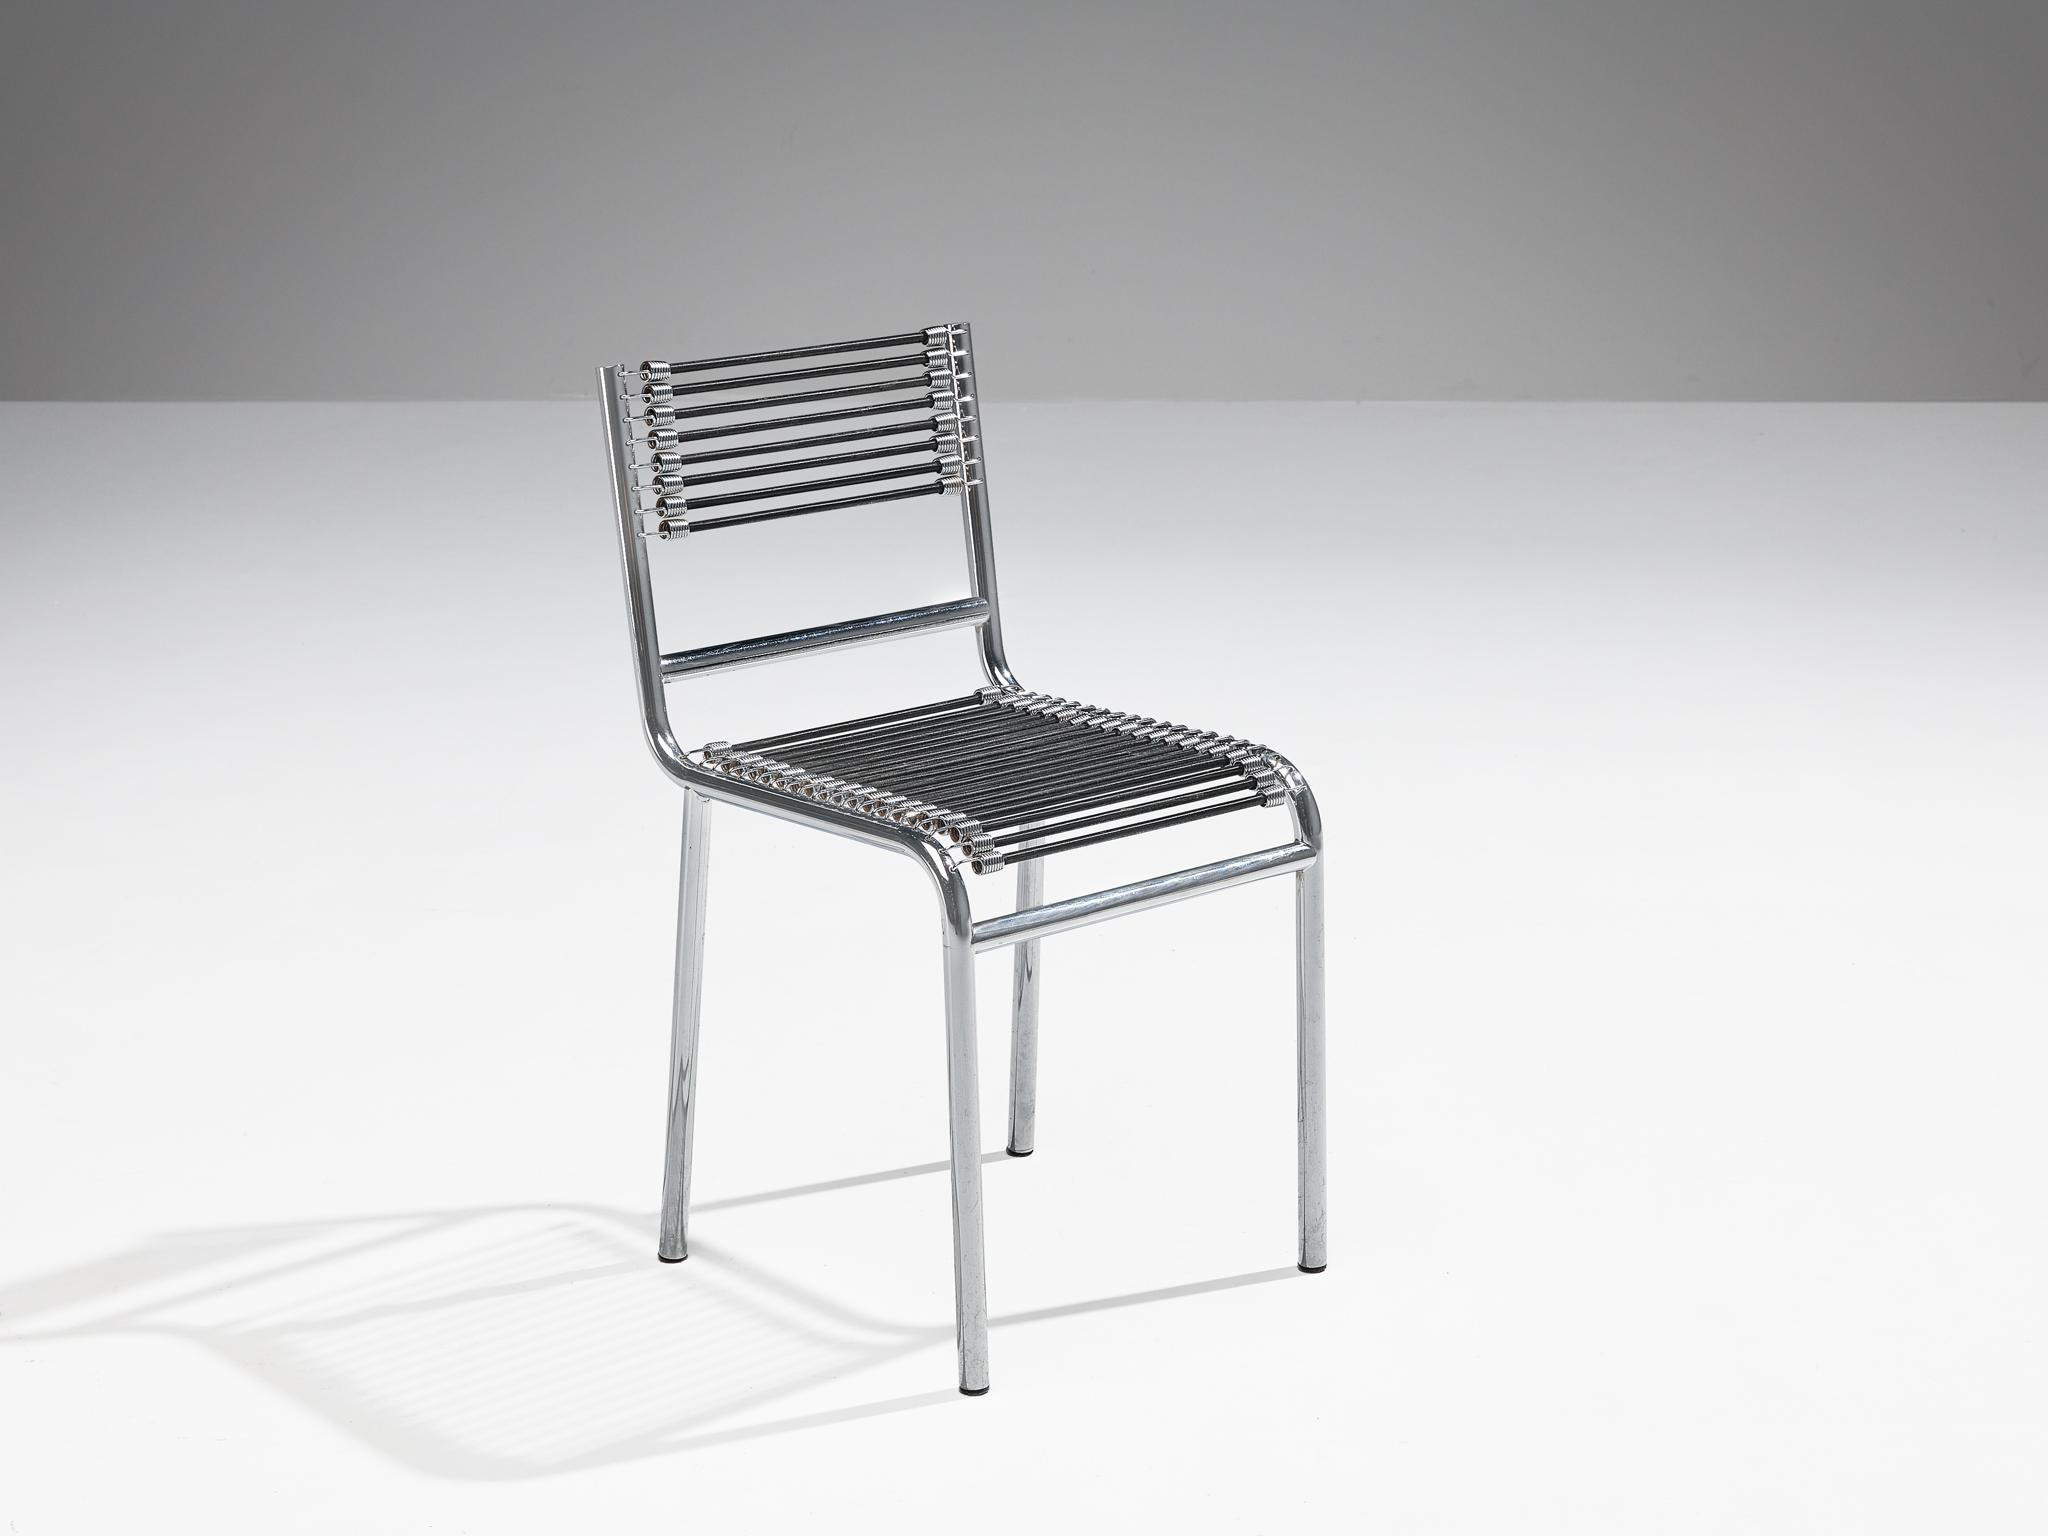 René Herbst, chaise 'Sandows', modèle '101', acier chromé, corde élastique, France, design 1928, produit dans les années 1970.

La chaise 'Steele' incarne les avancées industrielles des années 20, avec une construction en acier tubulaire intégrée à